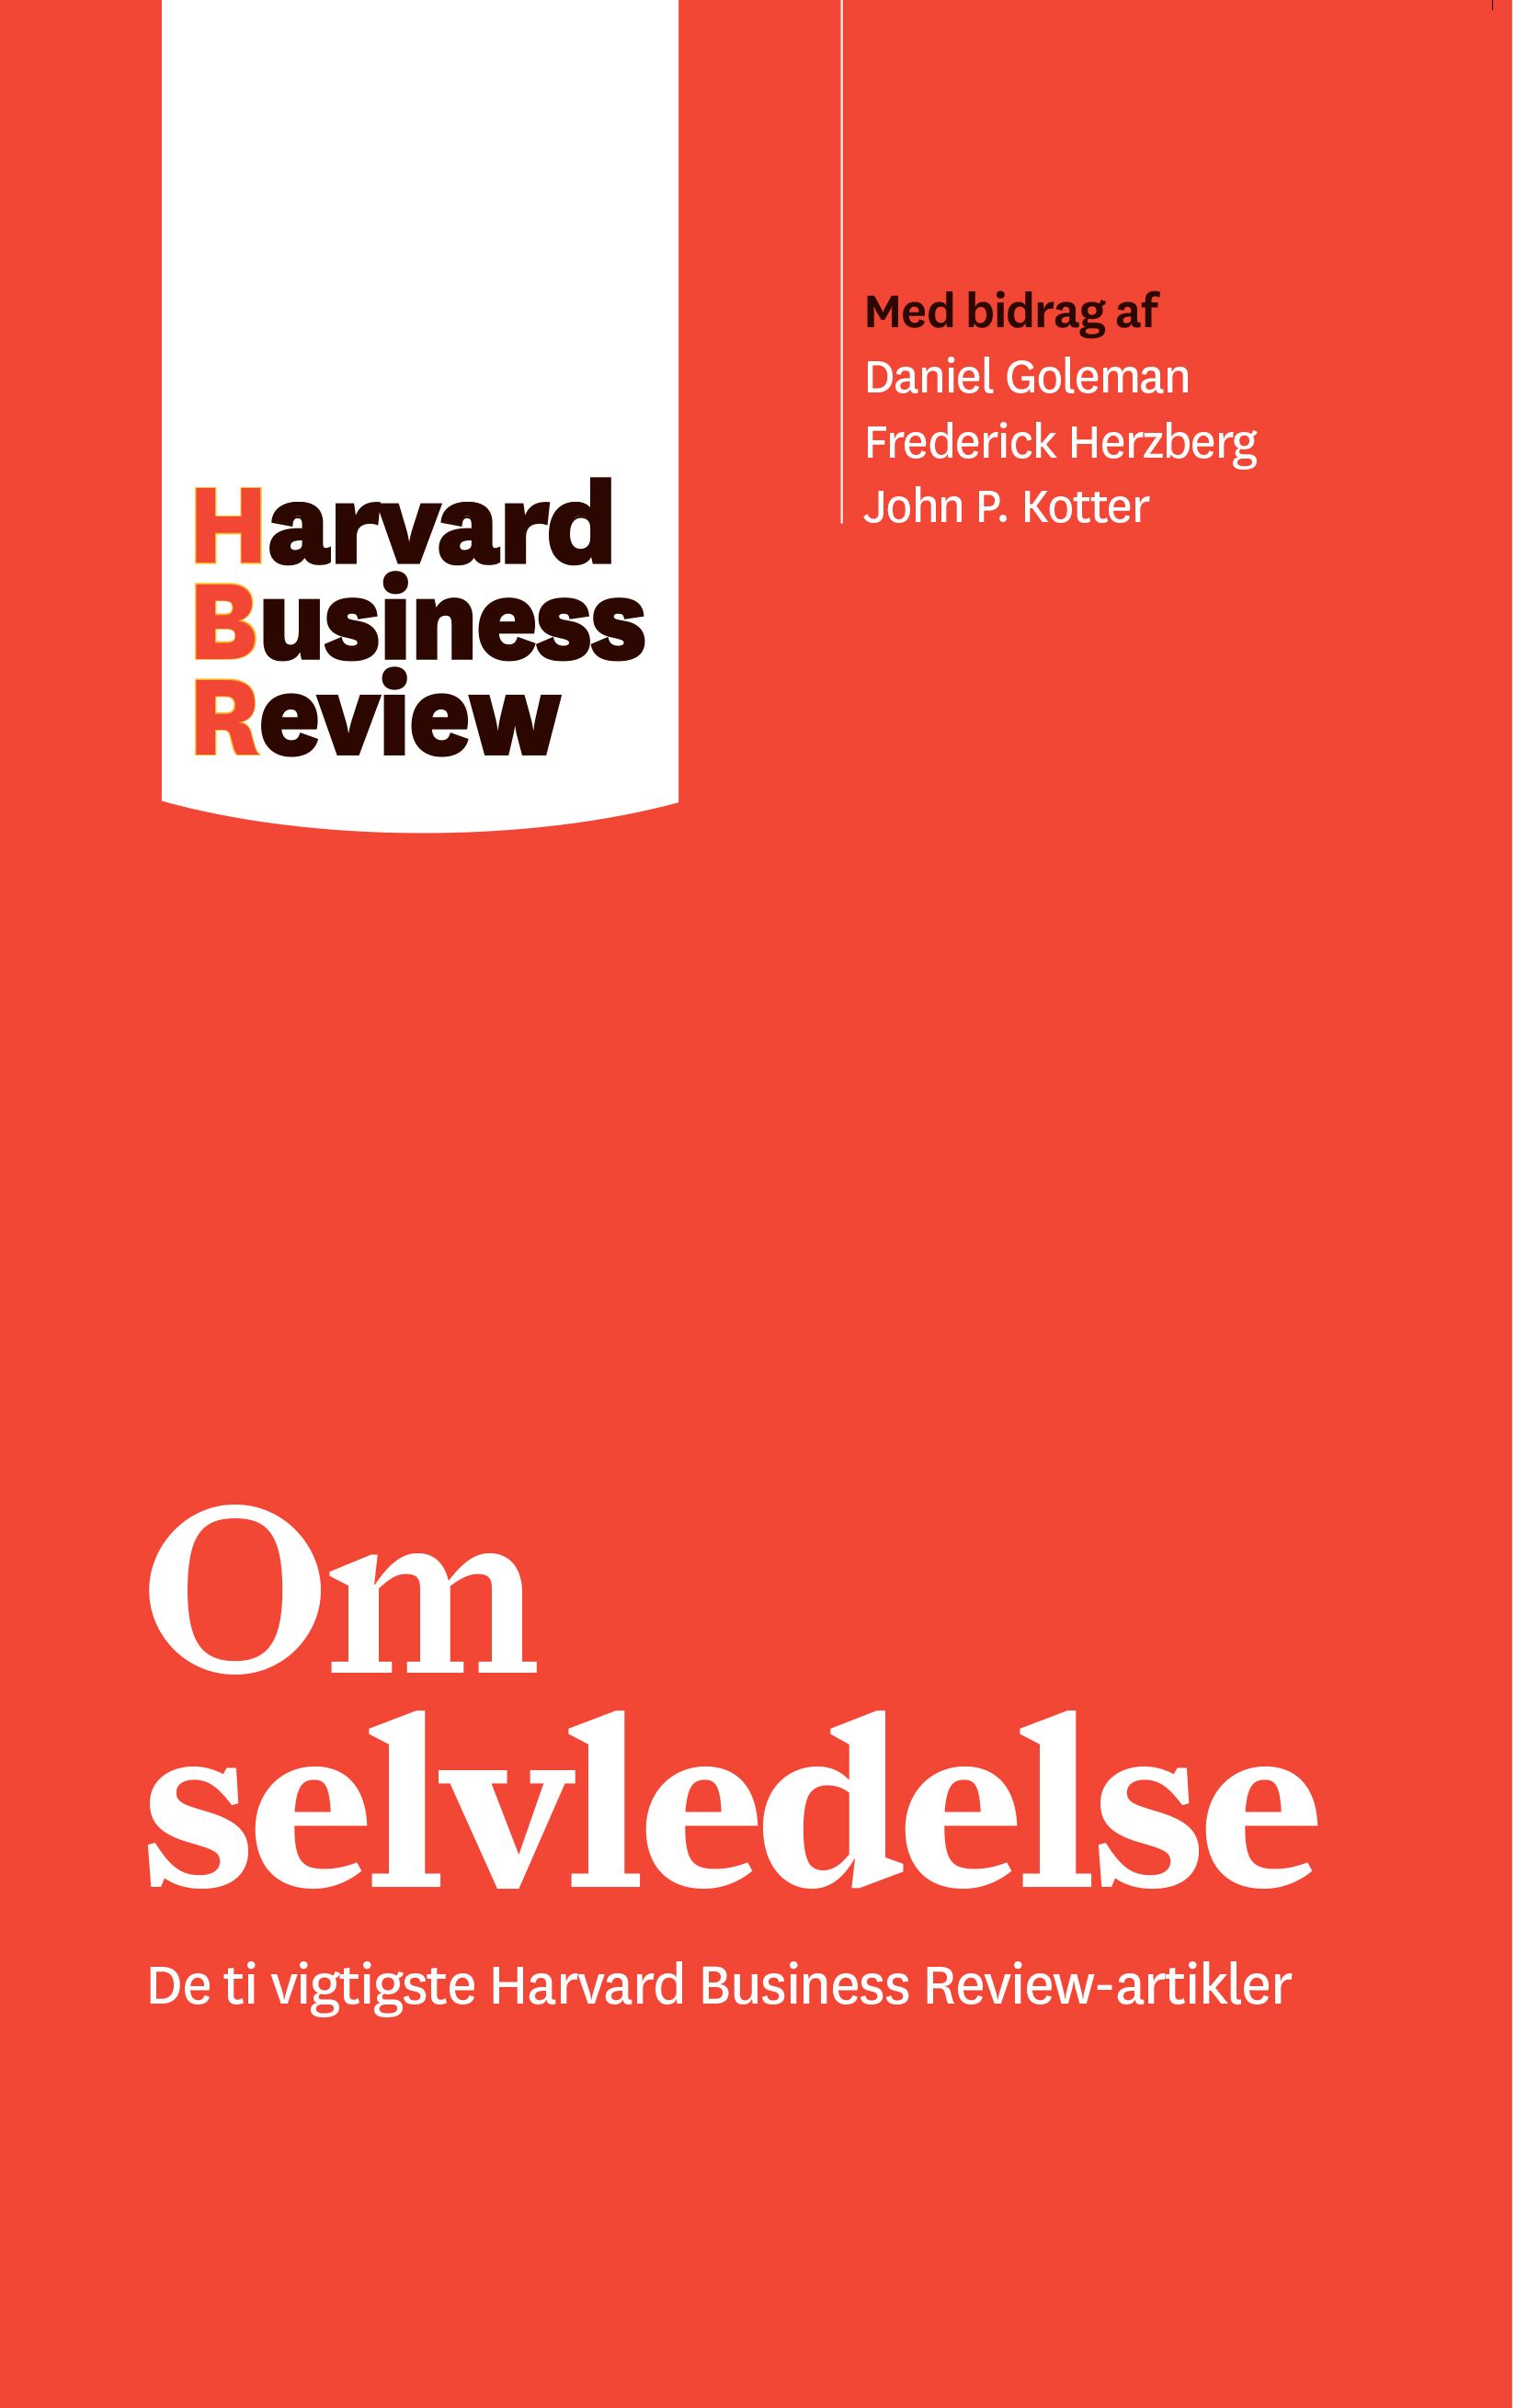 Om selvledelse, eBook by Harvard Business Review